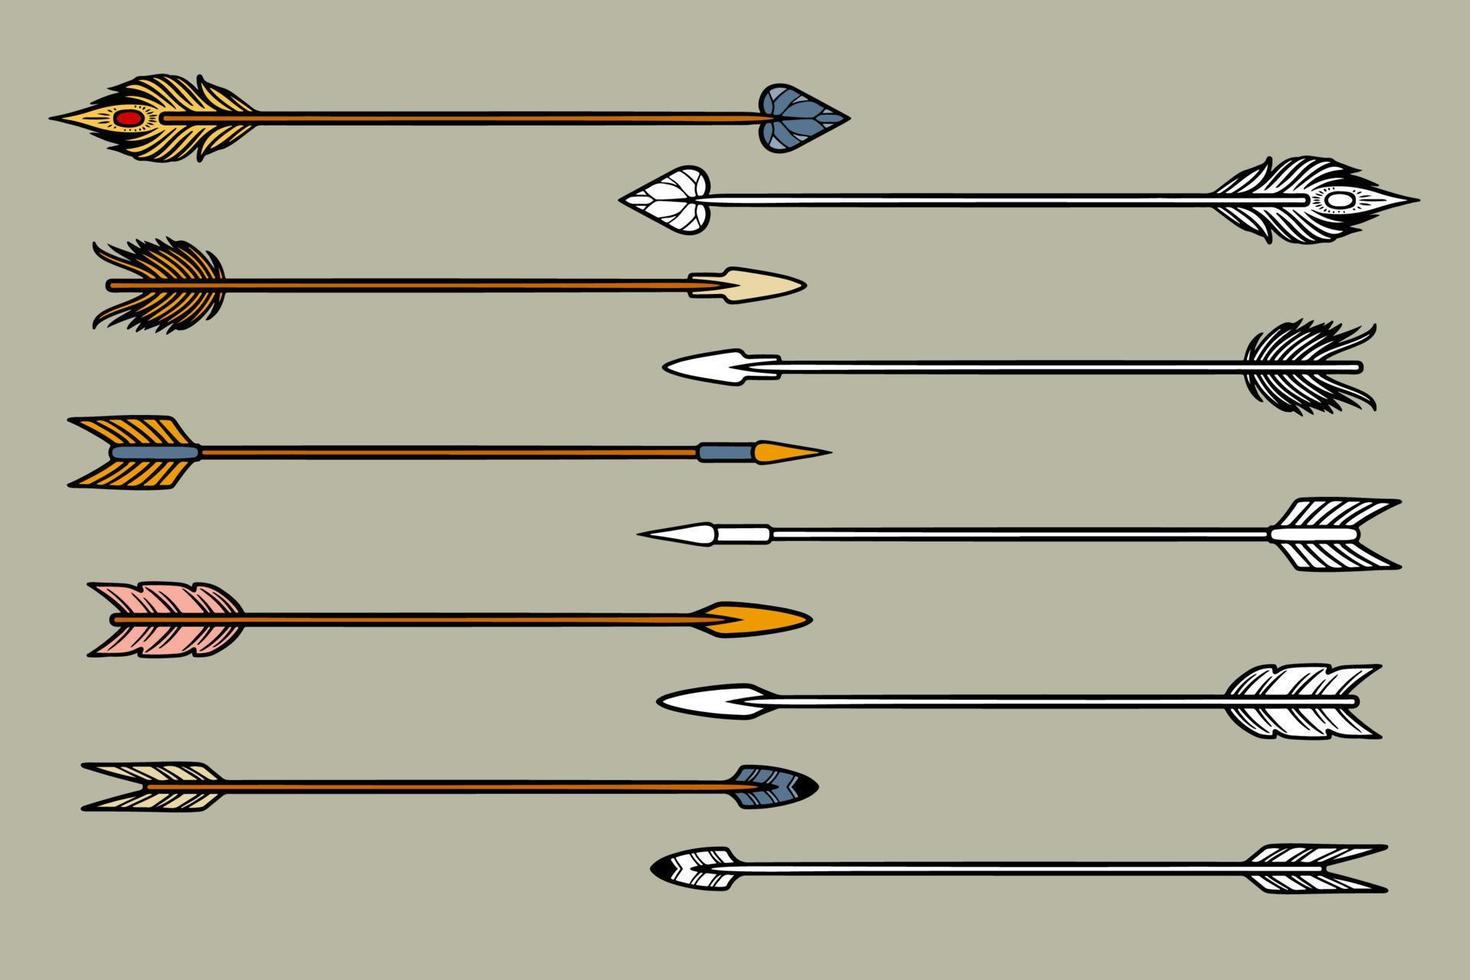 iconos de flecha establecidos para juegos ilustración vectorial vector